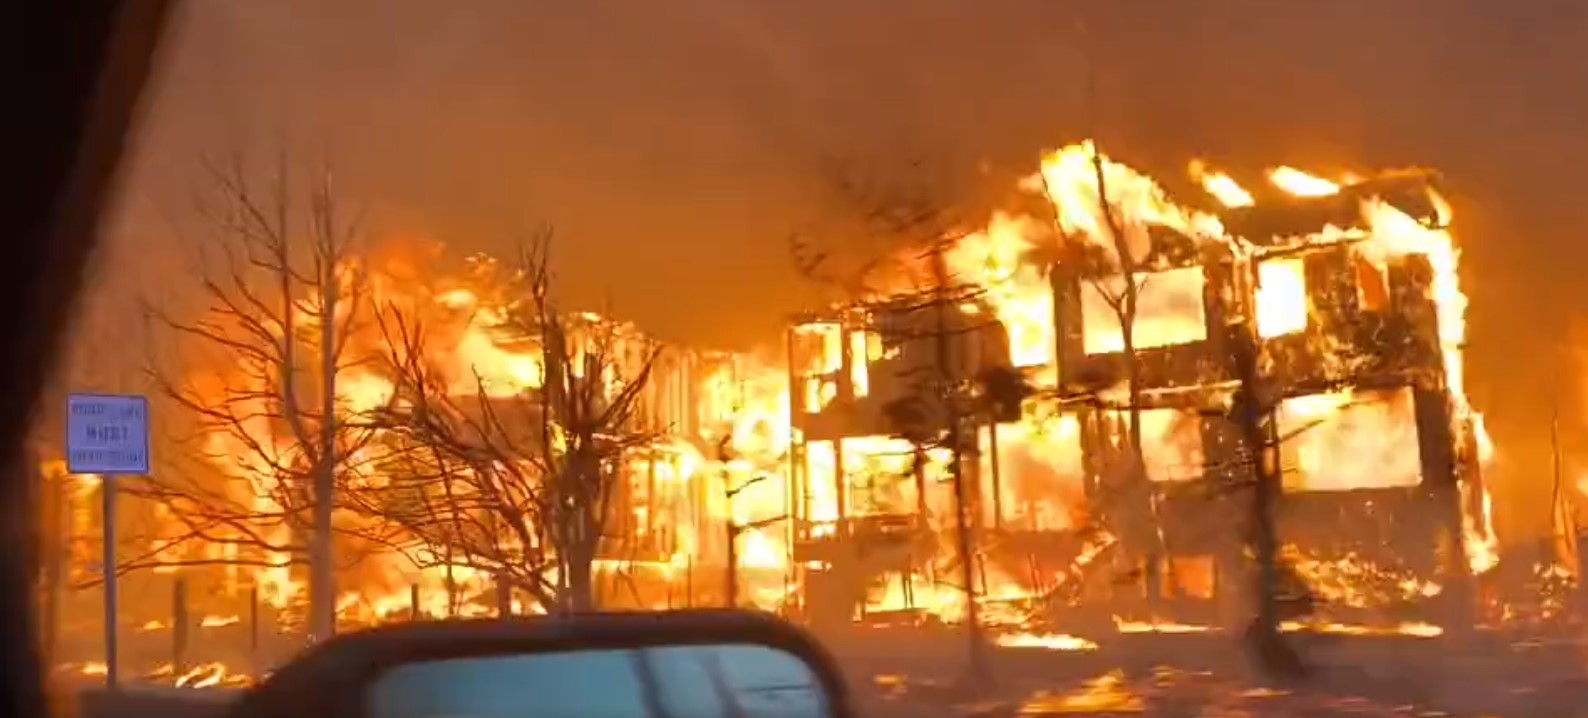 Πύρινη λαίλαπα στο Κολοράντο των ΗΠΑ κατέκαψε 500 σπίτια – Πως εξηγείται από τους επιστήμονες [Βίντεο]